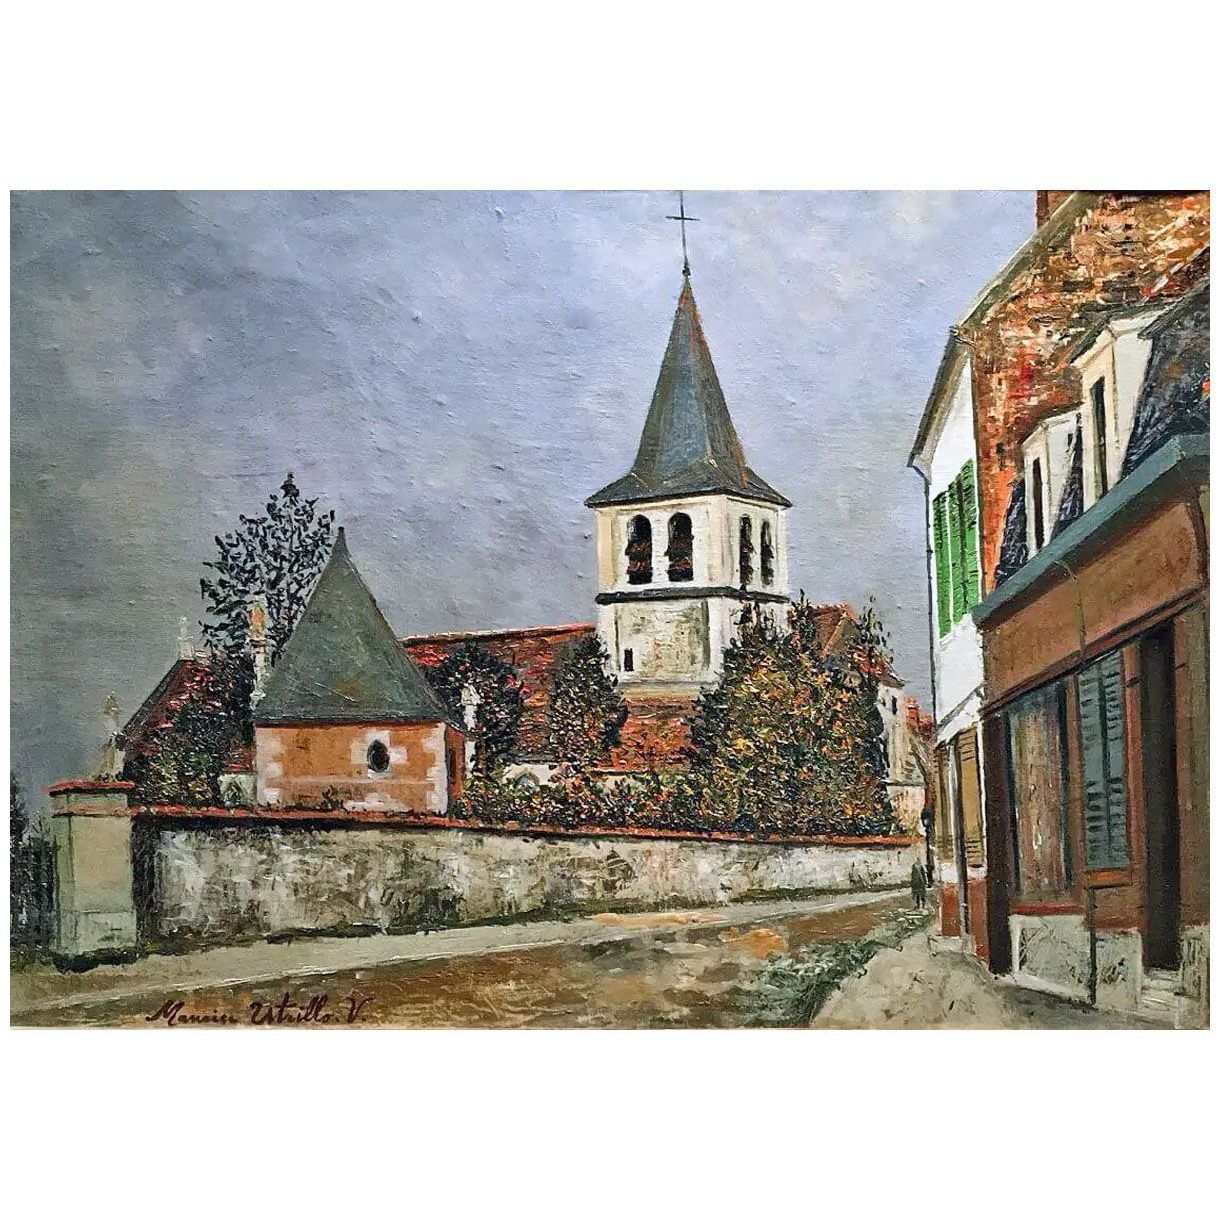 Maurice Utrillo. Eglise dans un faubourg de Paris. 1909. Netter collection Paris